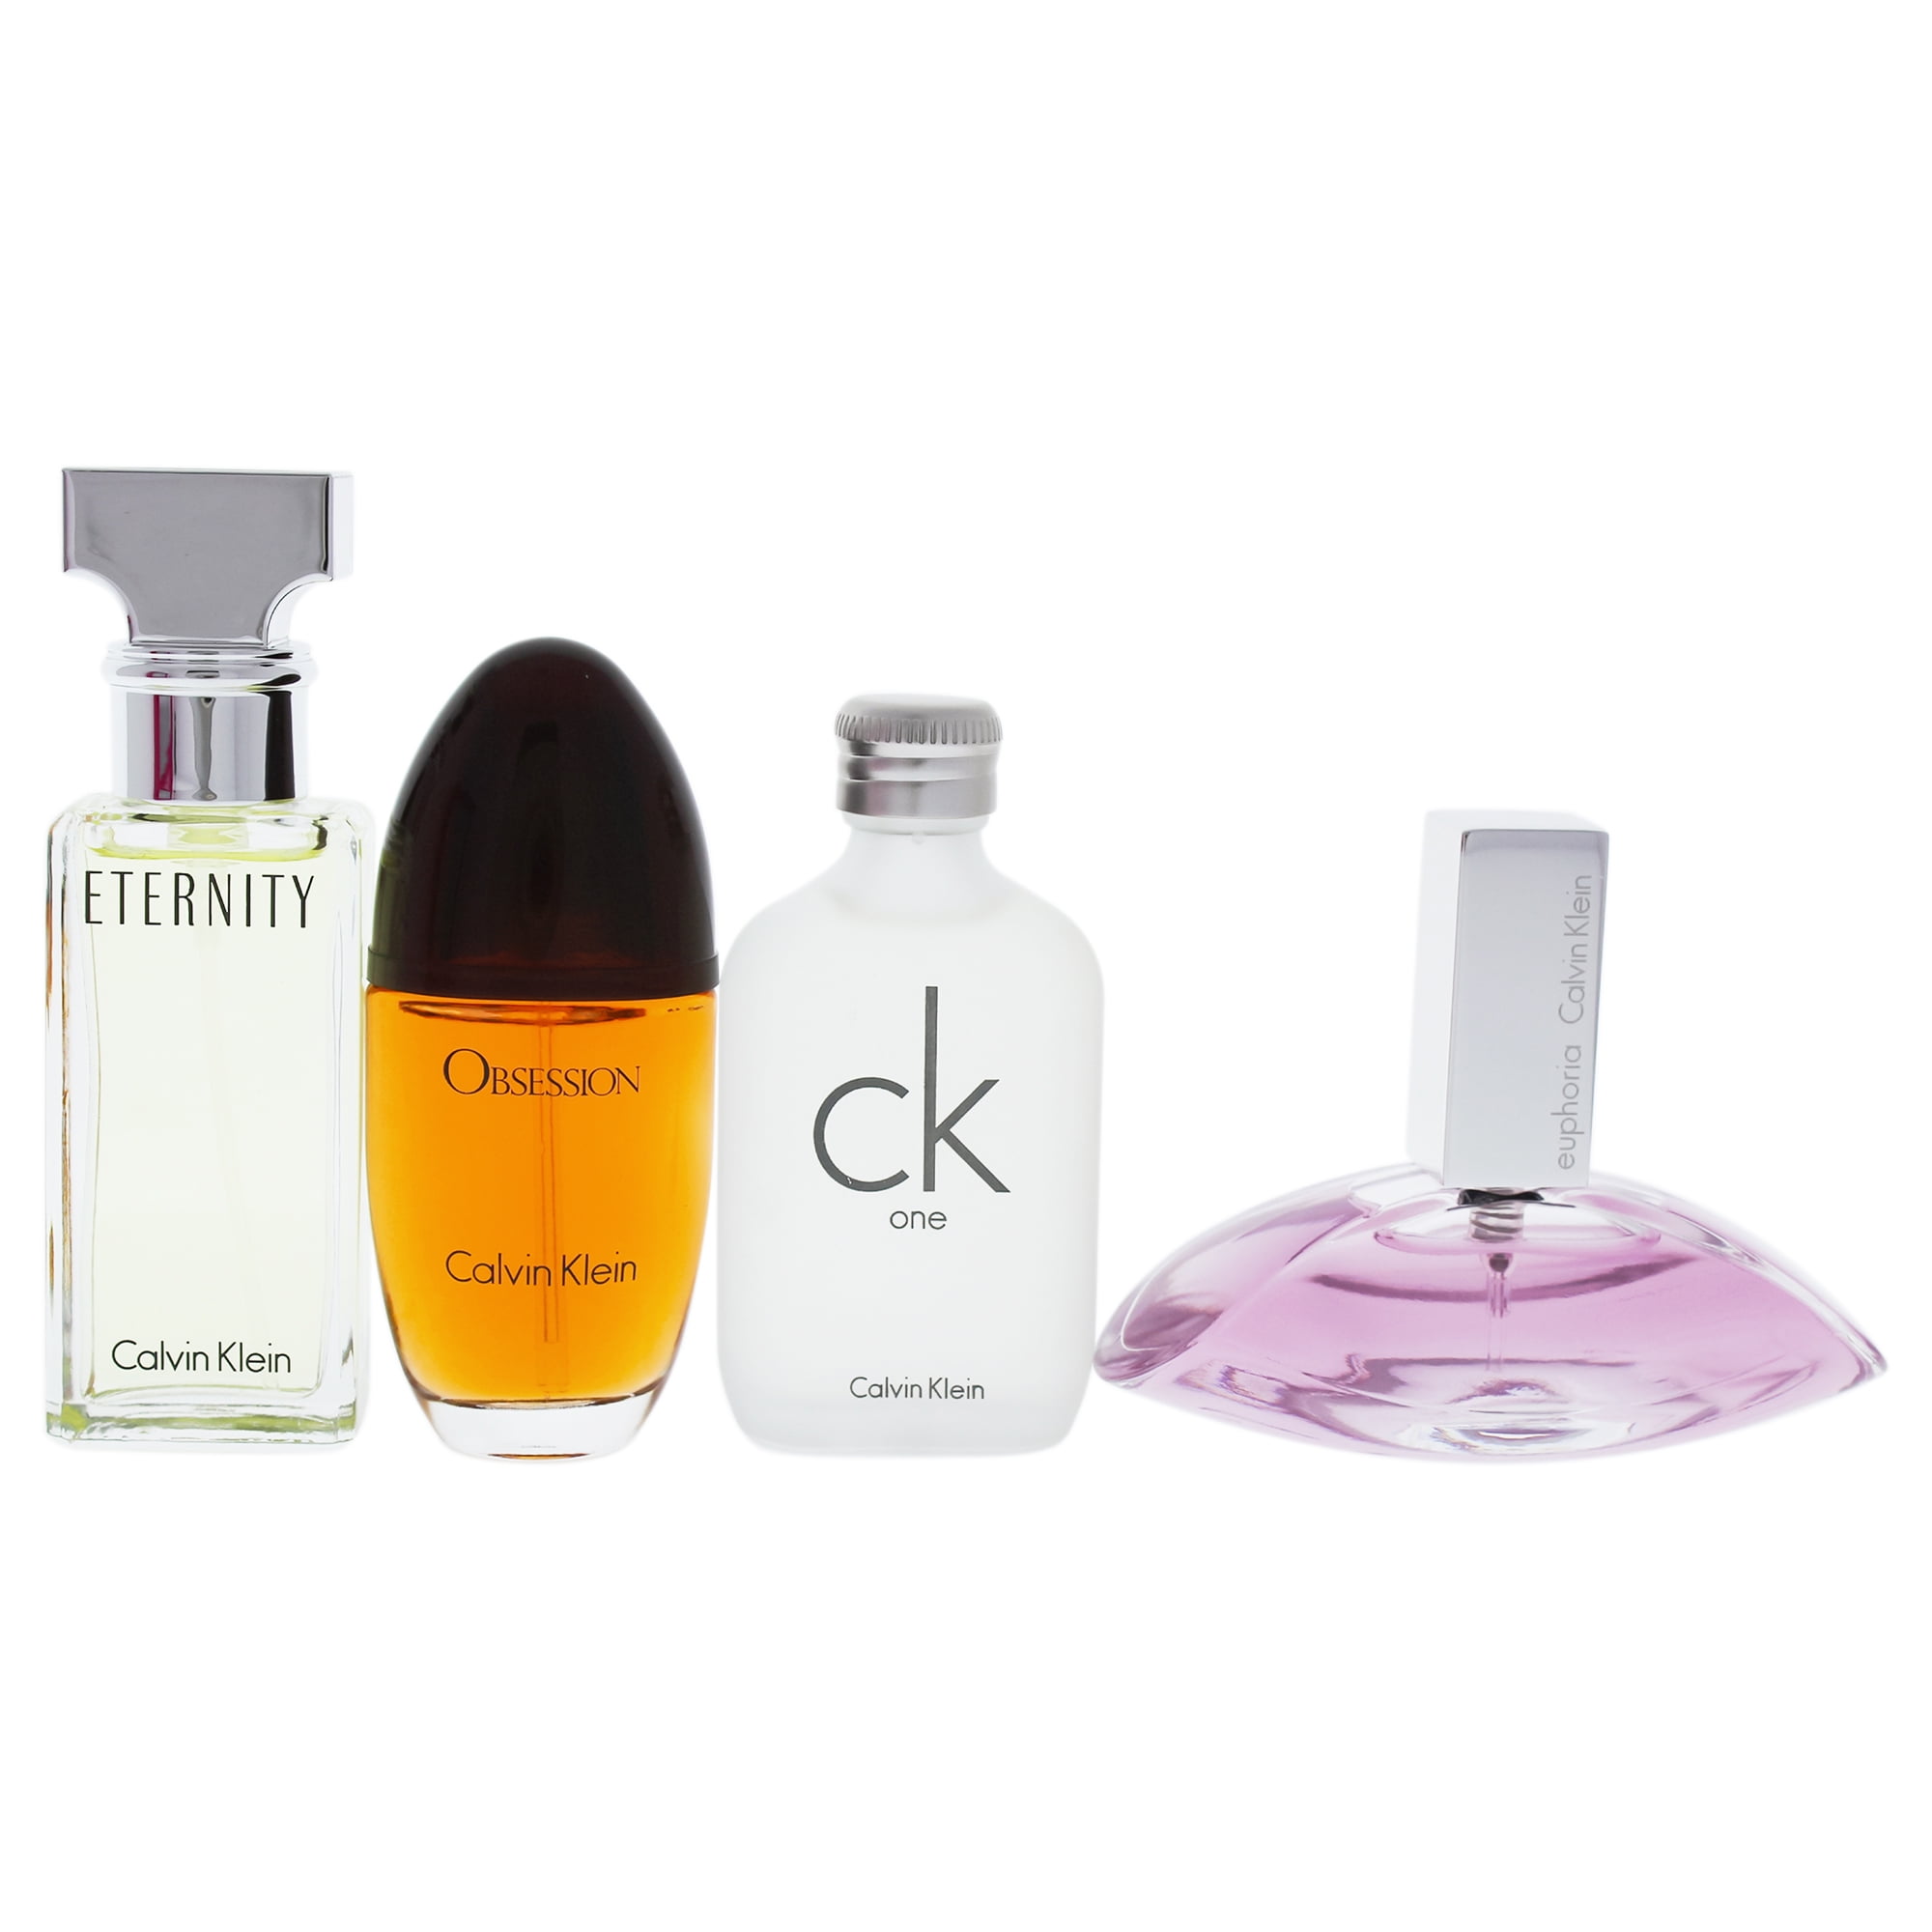 Calvin Klein Variety Mini Perfume Gift set for Women, 4 Piece 